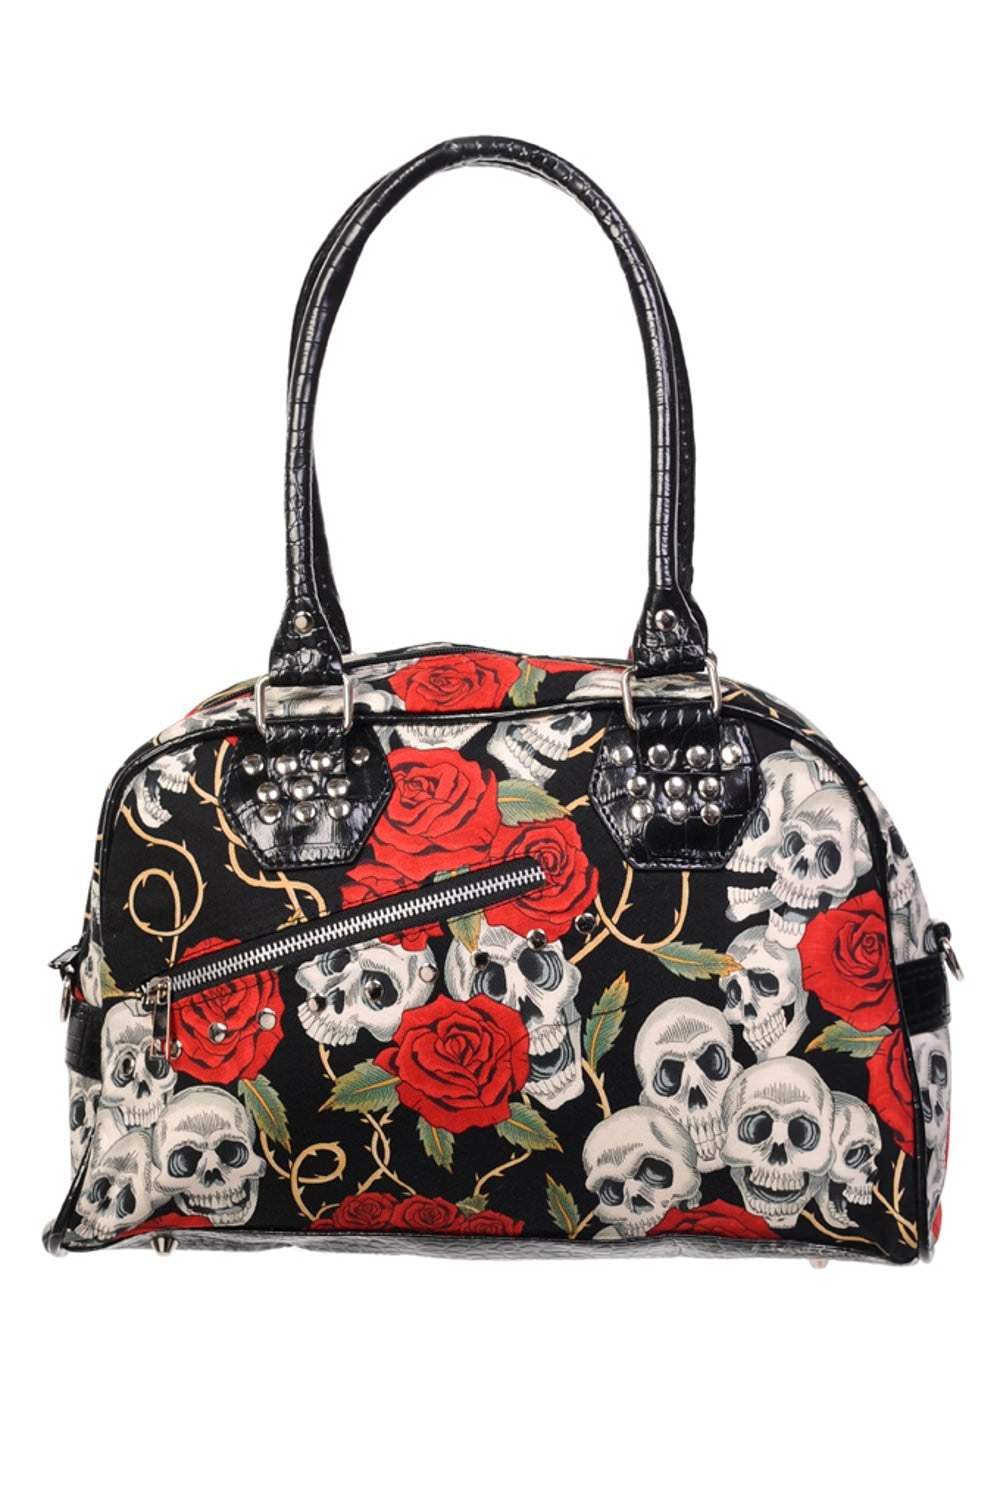 Banned Alternative Medium Skull Roses Handbag